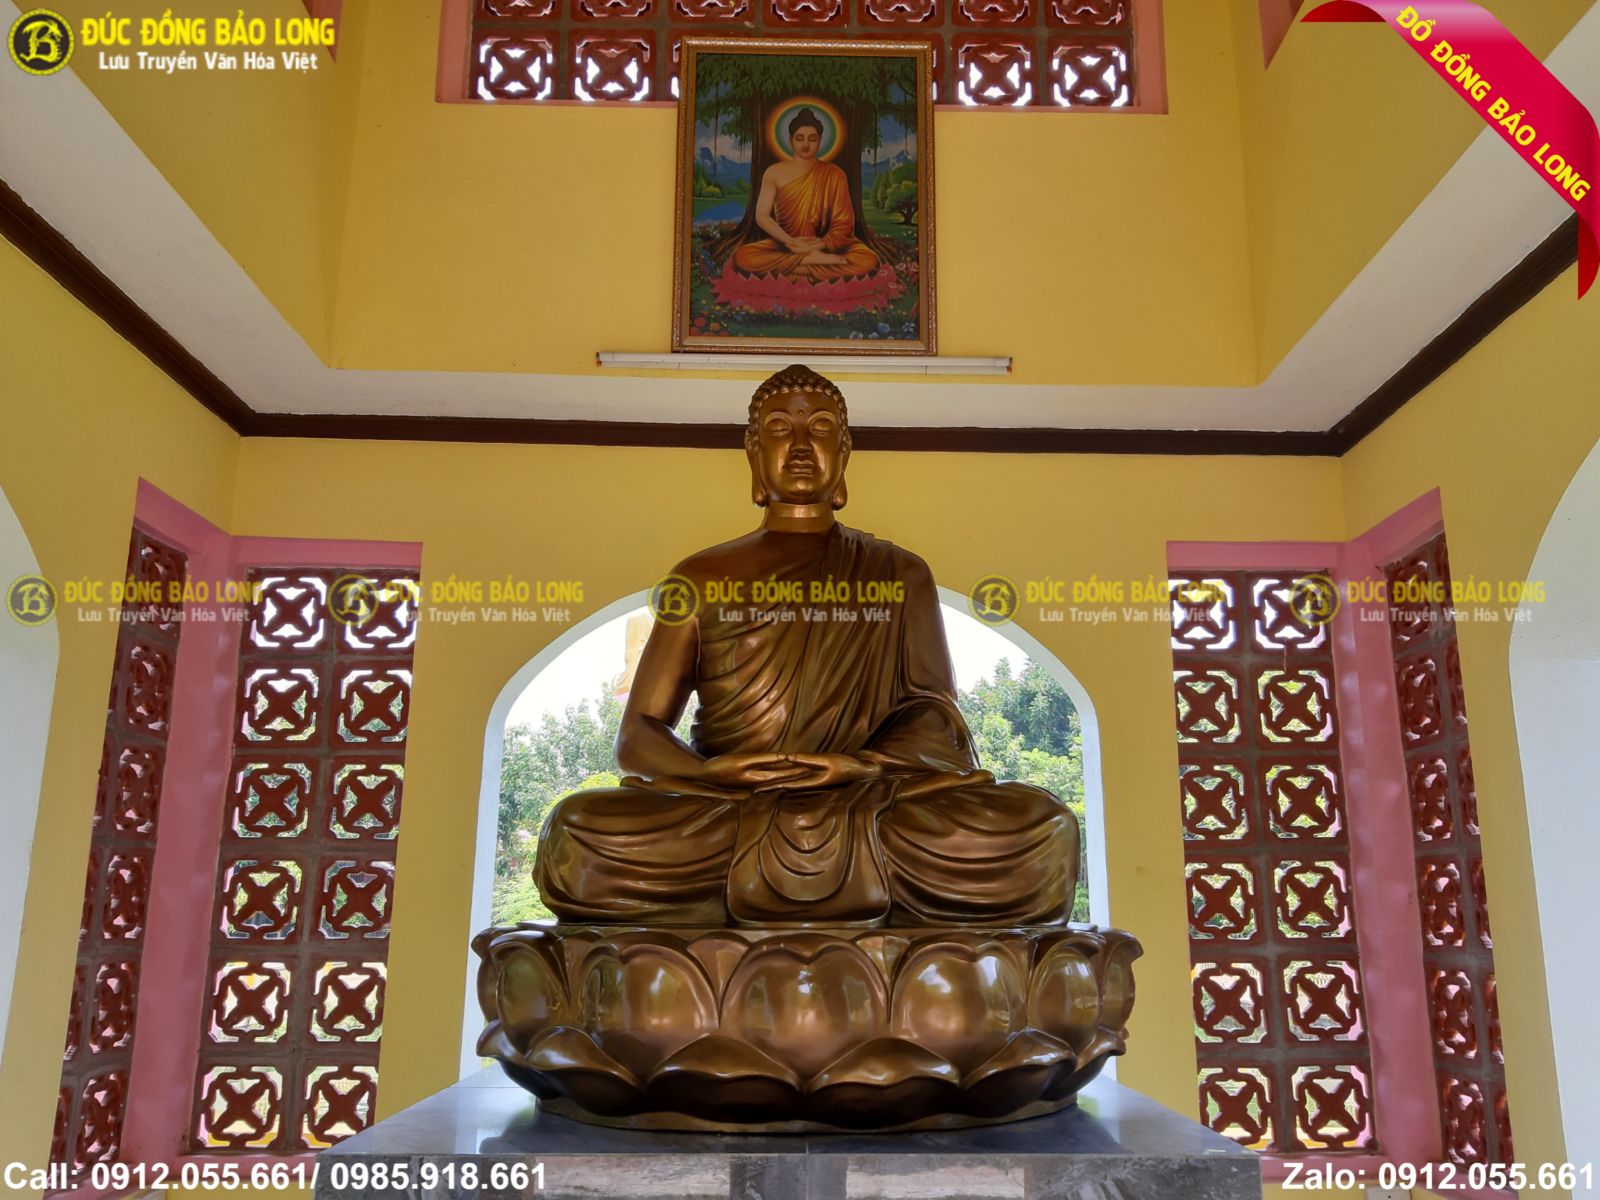 Địa chỉ nhận đúc tượng Phật bằng đồng tại Long An uy tín, chất lượng